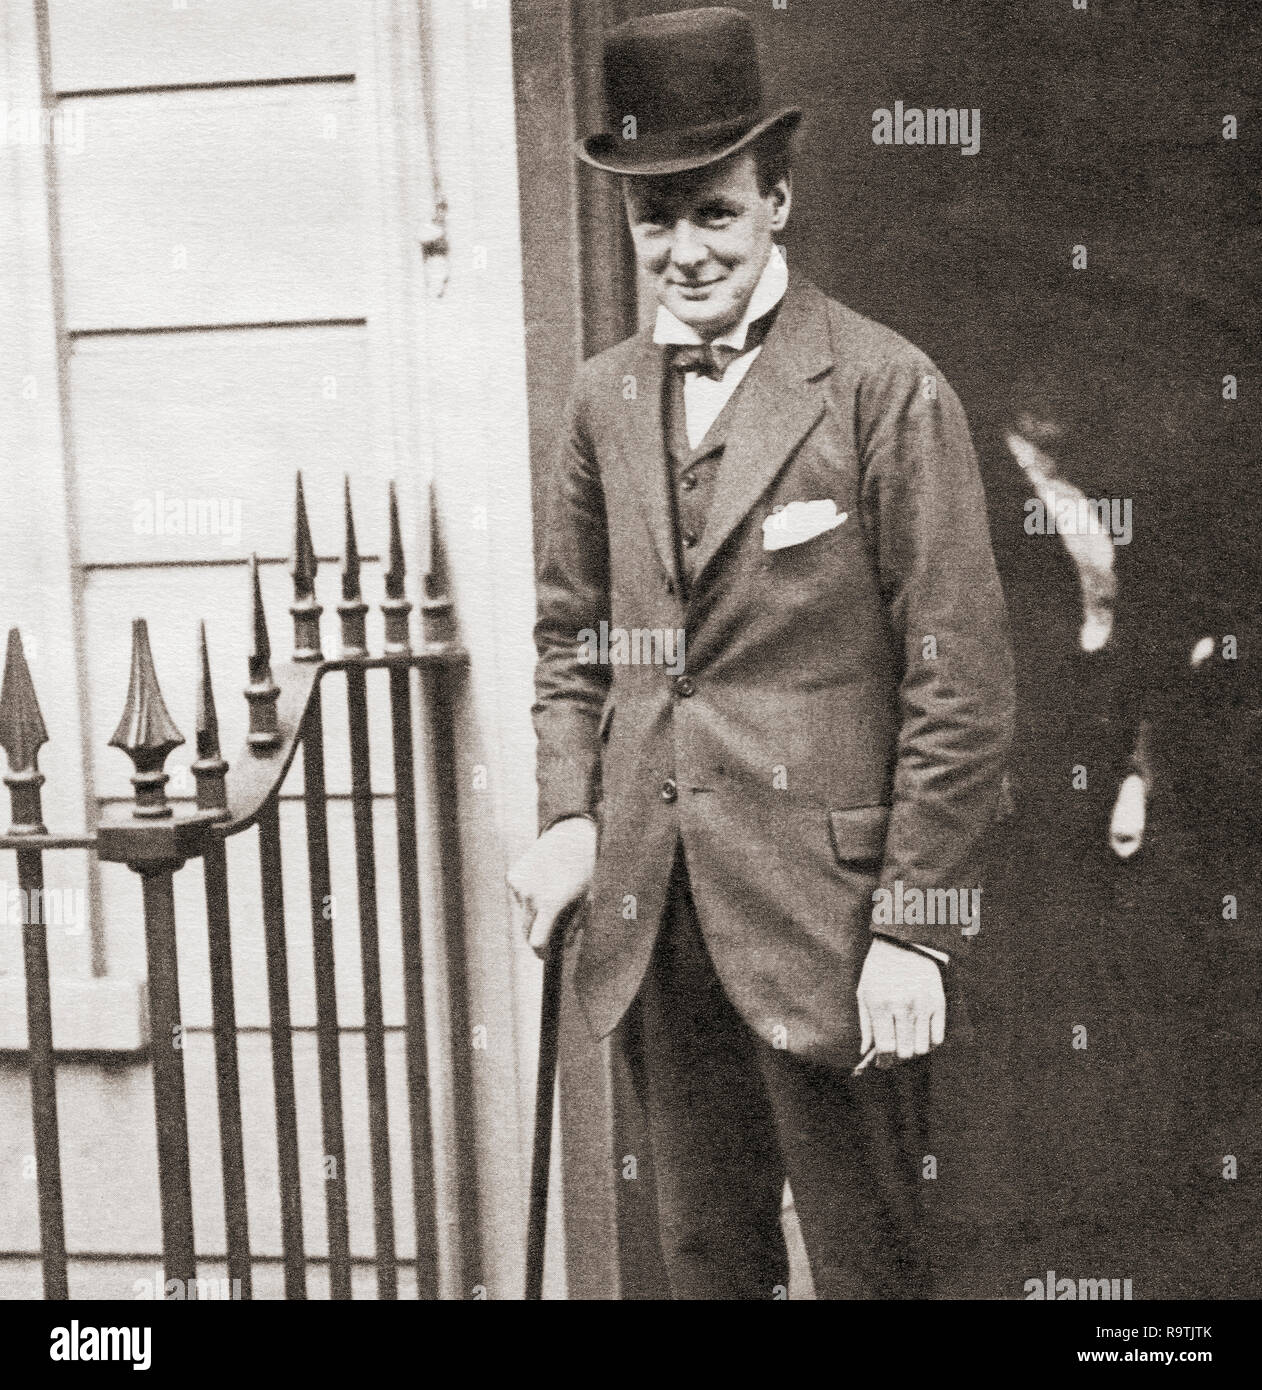 Winston Churchill vu ici en 1908 au n° 10 Downing Street, Londres, Angleterre. Sir Winston Leonard Spencer-Churchill, 1874 -1965. Homme politique, homme d'État britannique, officier de l'armée, et l'écrivain, qui fut Premier Ministre du Royaume-Uni de 1940 à 1945 et de nouveau de 1951 à 1955. Banque D'Images